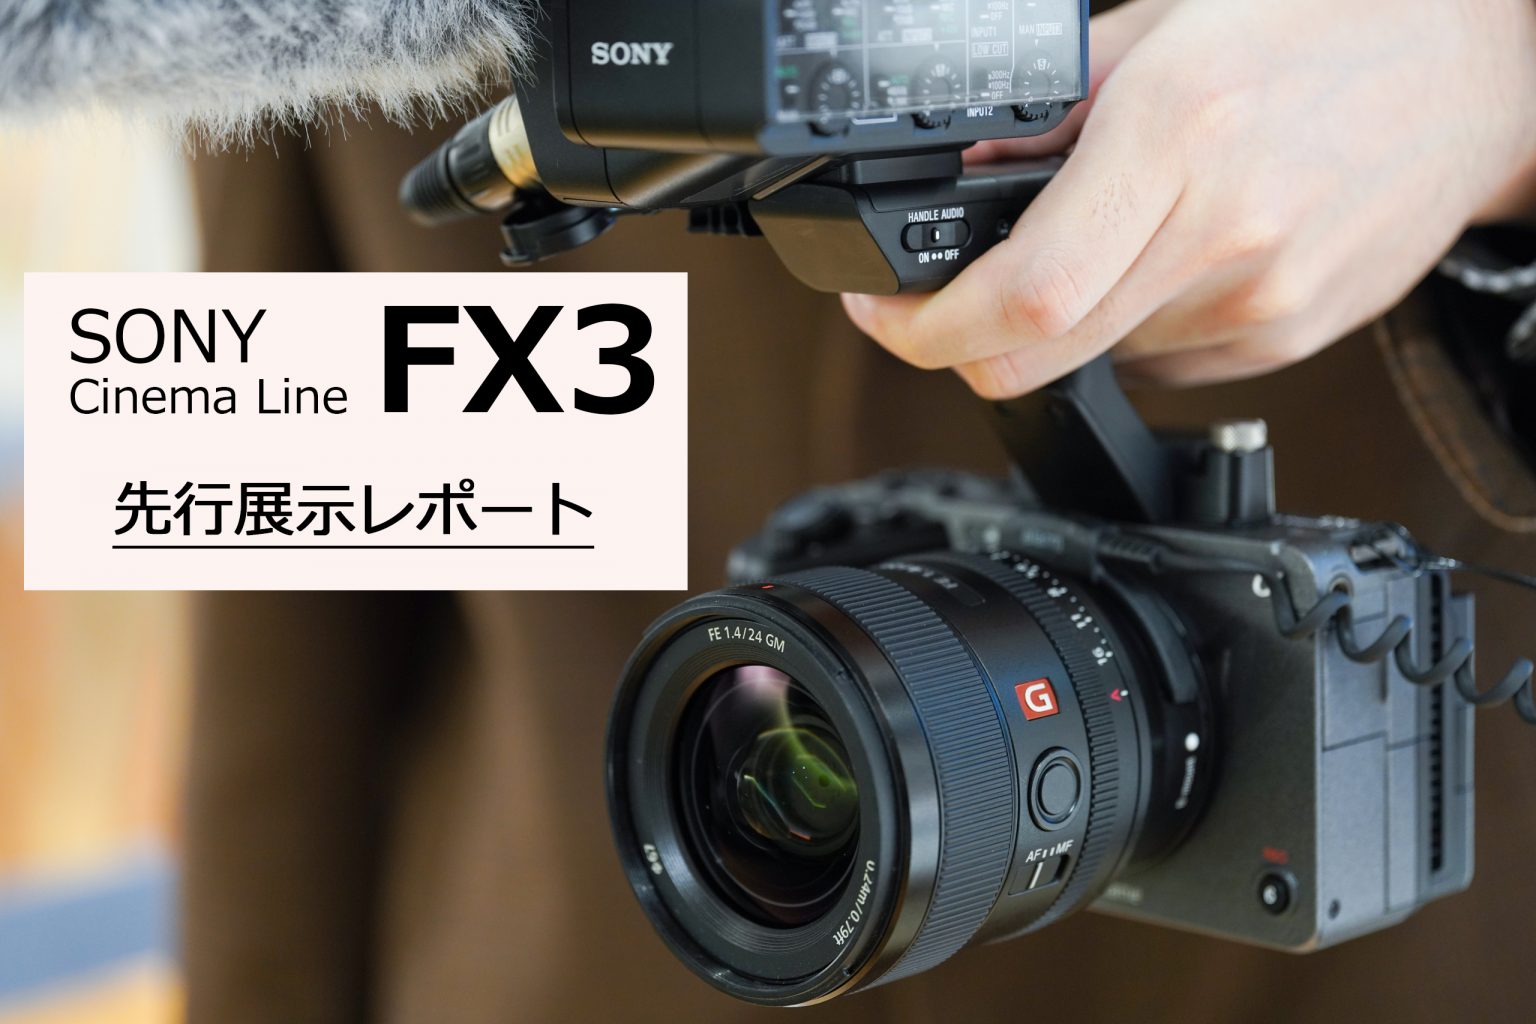 【SONY】CinemaLineカメラ『FX3』 先行展示レポート